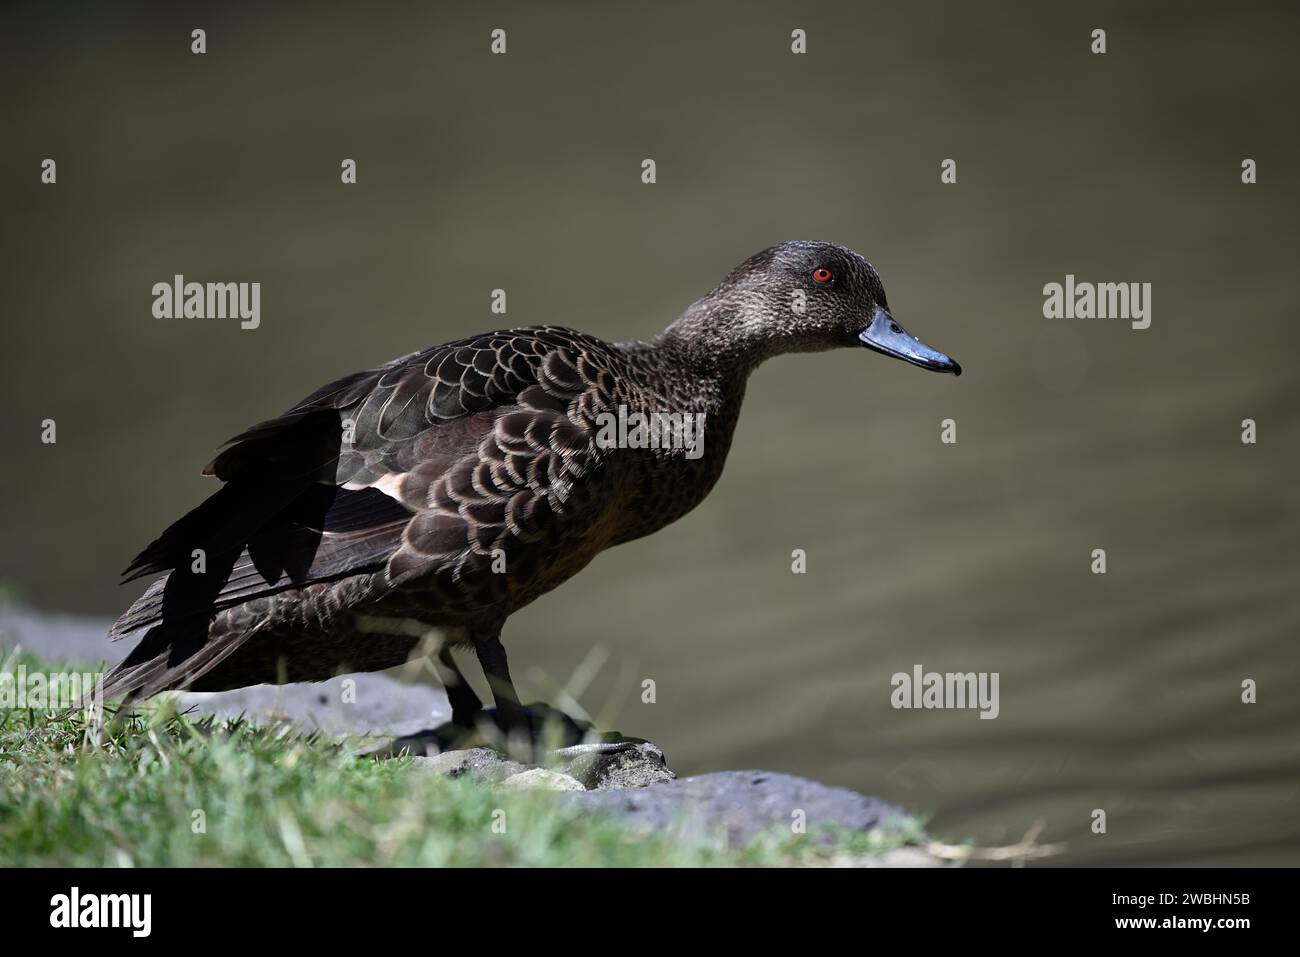 Vue latérale d'une femelle de sarcelle de châtaignier debout sur la terre à côté d'un étang, avec la tête de l'oiseau tendue au-dessus de l'eau, pendant une journée ensoleillée Banque D'Images